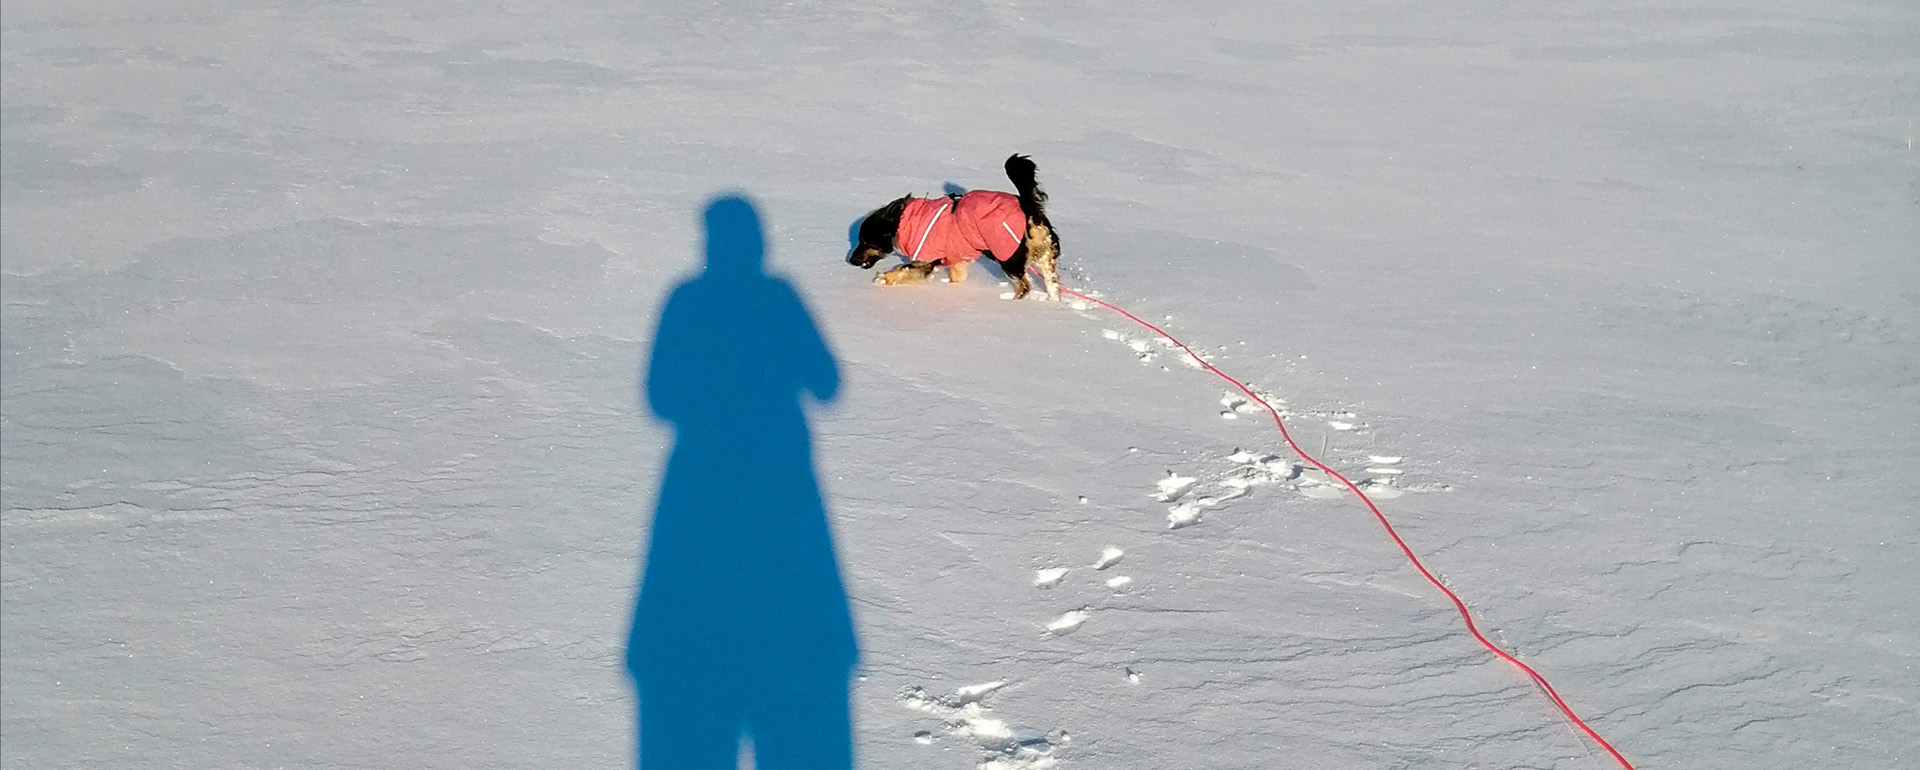 Lumihankeen heijastuu ihmisen varjo. Hangessa näkyy koiran tassujen jälkiä ja pieni mäyräkoira ulkoilee.